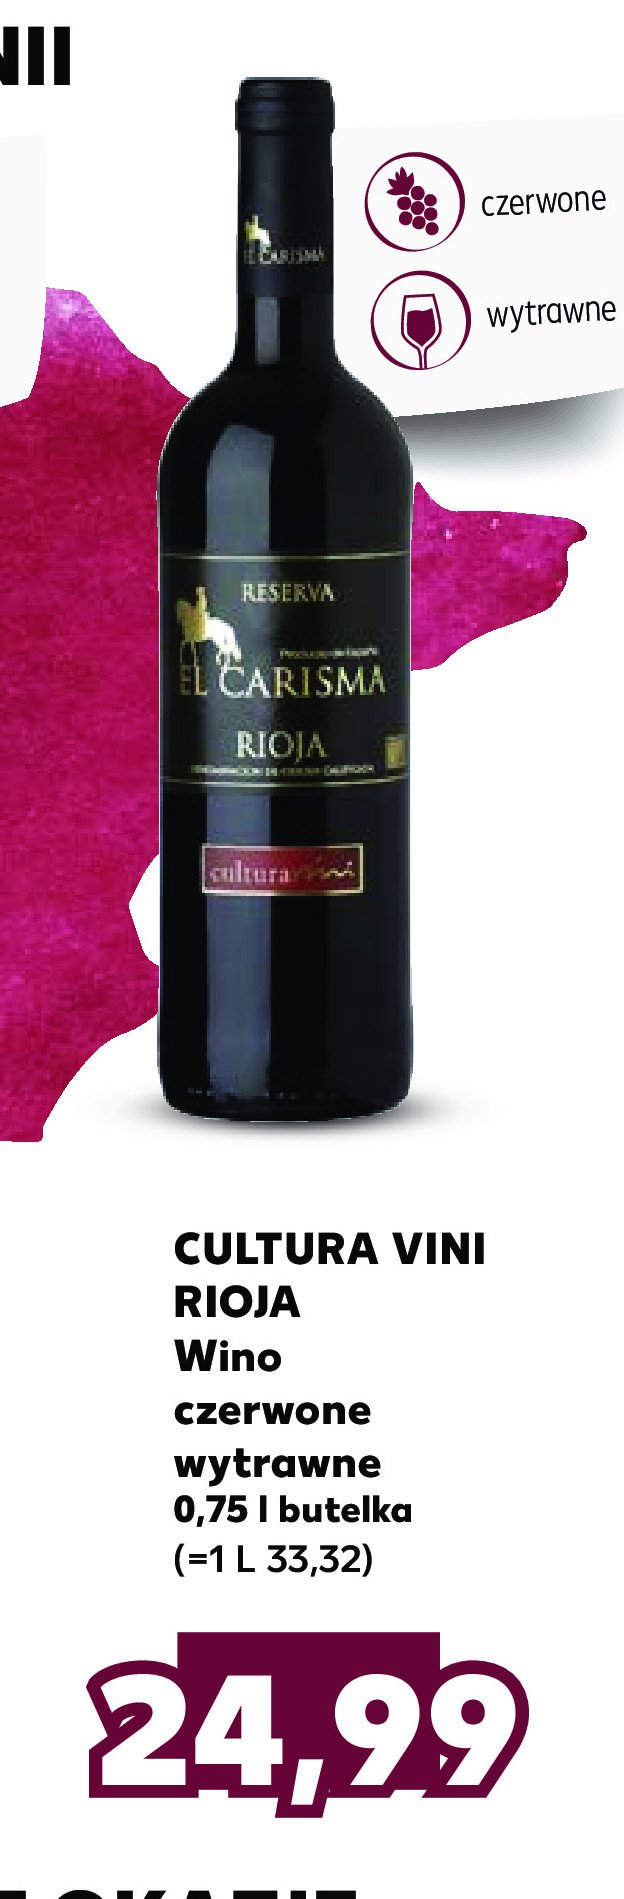 Wino CULTURA VINI CARISMA RIOJA promocja